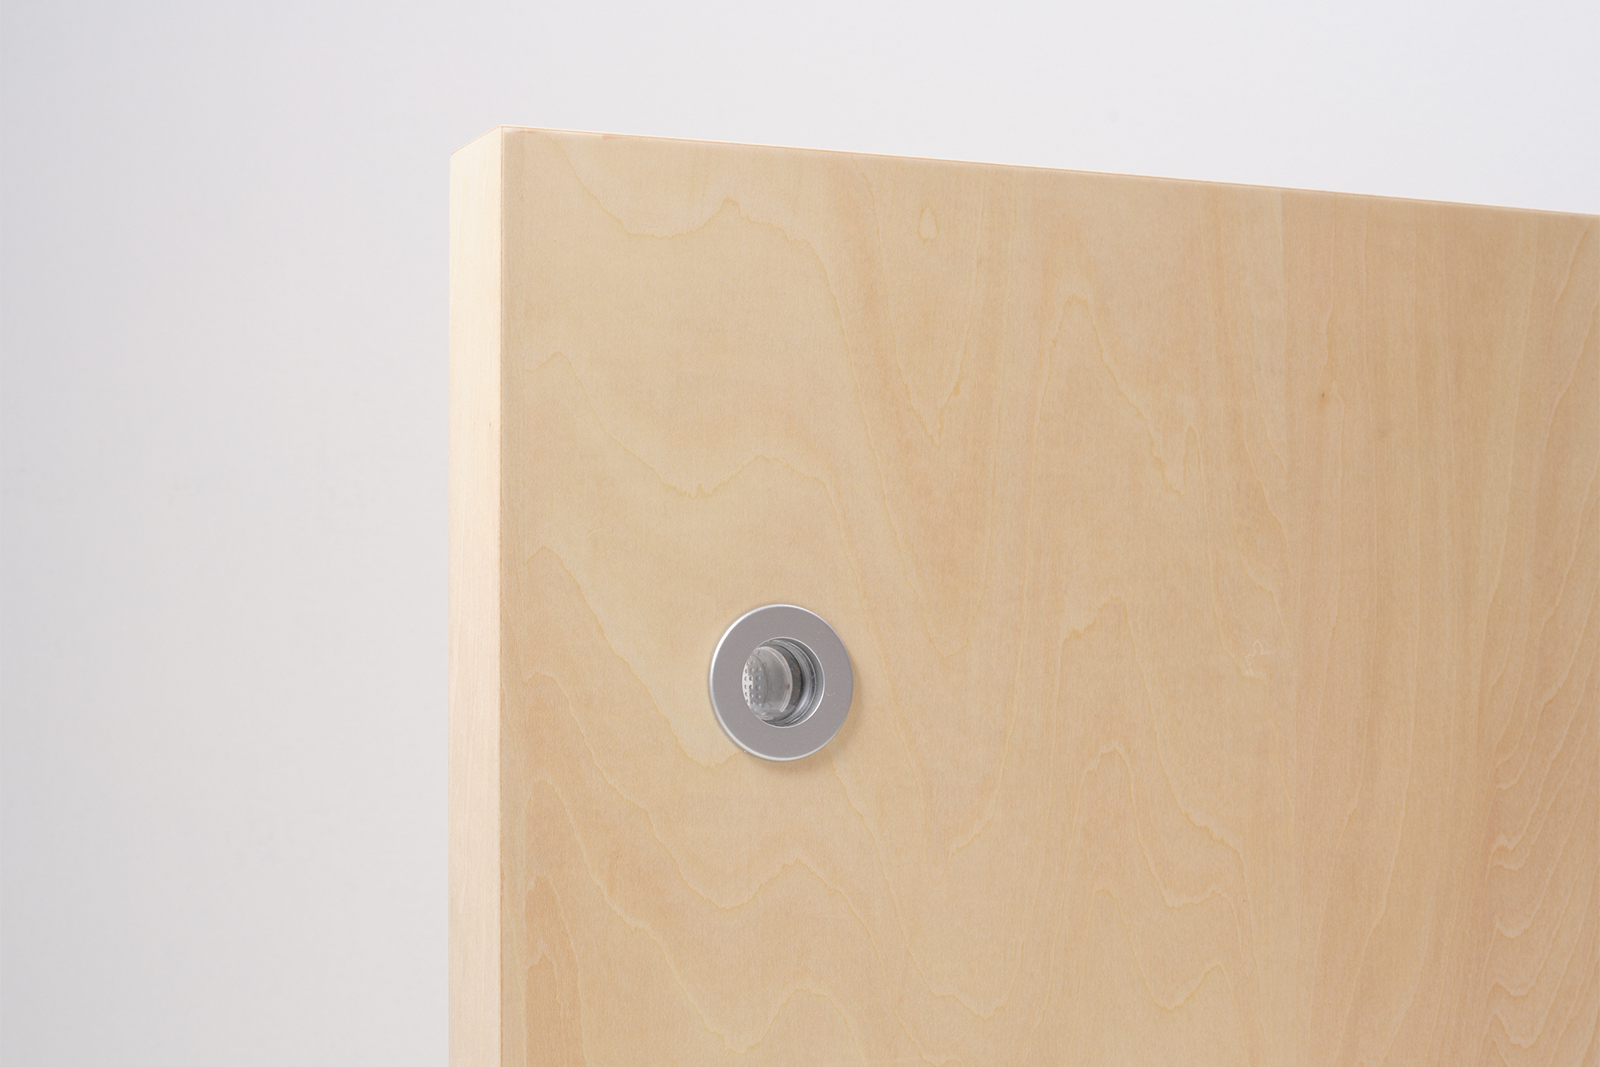 木製ユニットドア 開き戸 シナ DW-DR012-04-G191 表示錠を選択すると付属される「明かりとり」